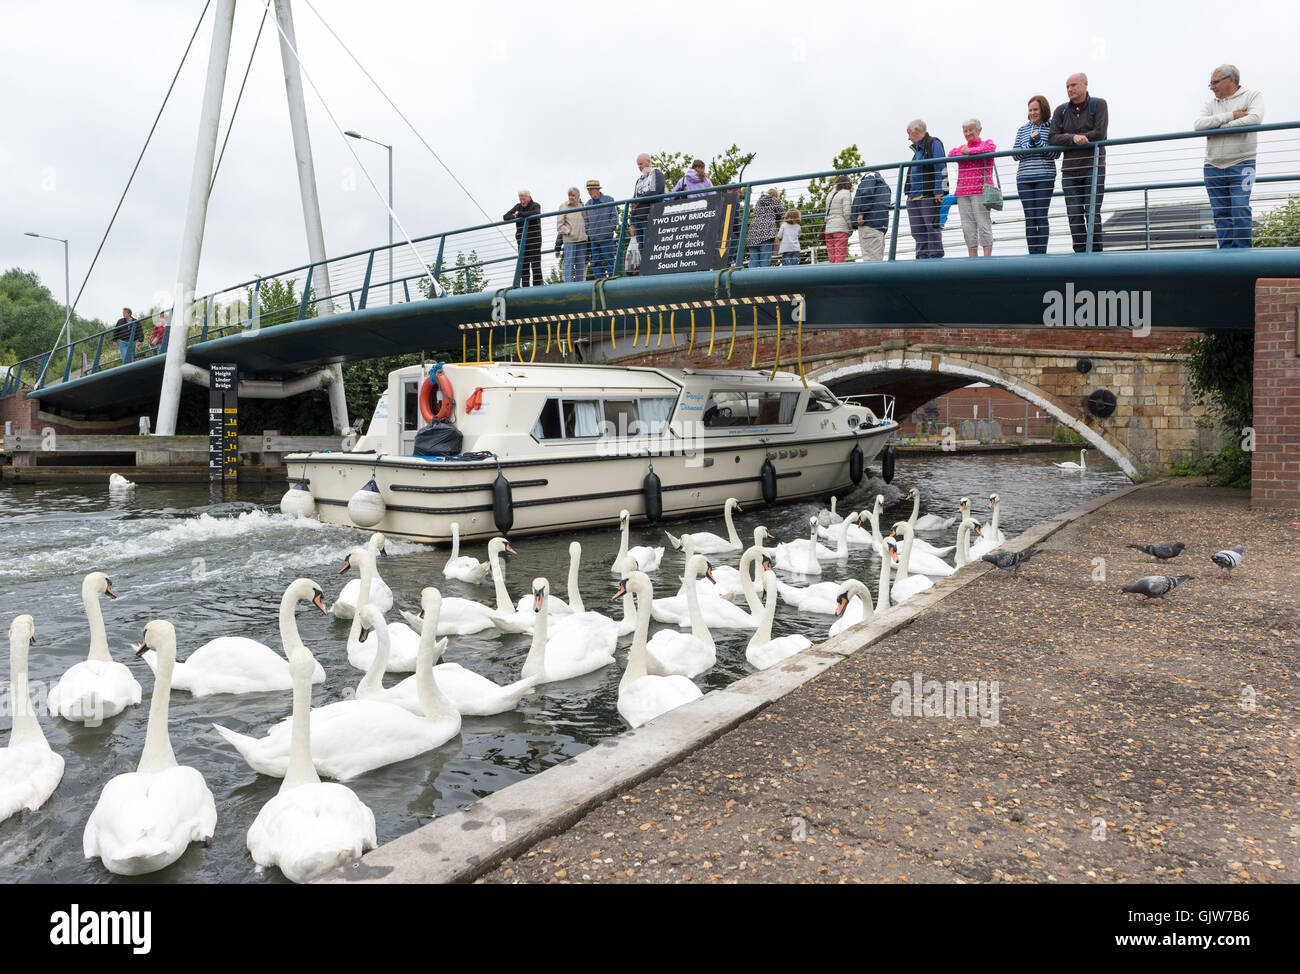 Un bateau de plaisance passe sous les badauds se trouvait sur un pont routier, tandis qu'un troupeau de cygnes se rassemblent à la rivière, Wroxham, Norfolk. Banque D'Images